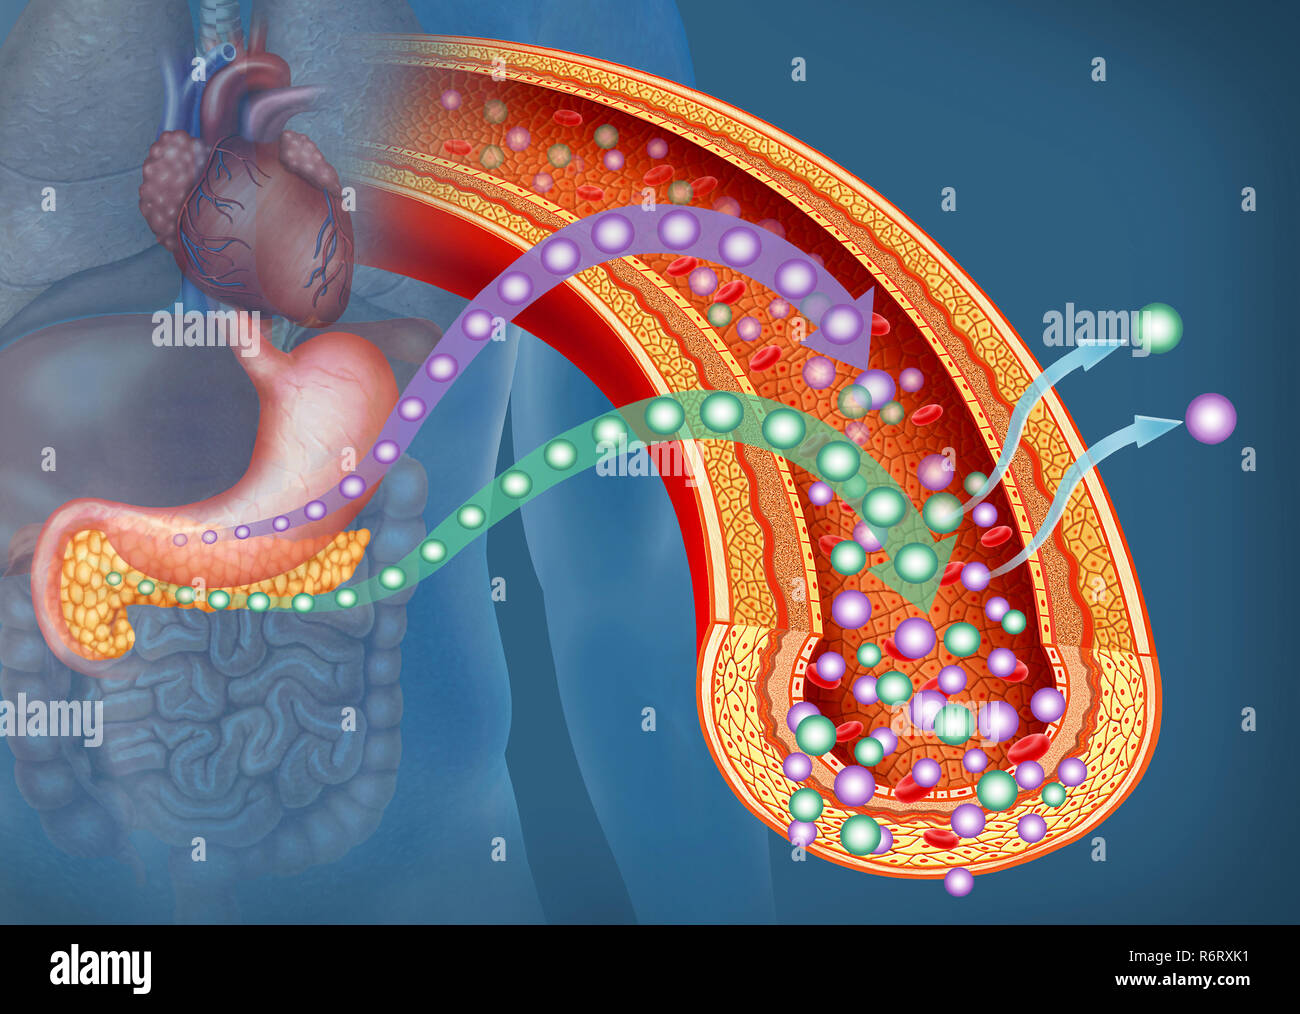 Illustrazione dell'importanza del glucosio e dell'insulina nel corpo umano. Il glucosio è la principale fonte di energia per il corpo umano. Foto Stock